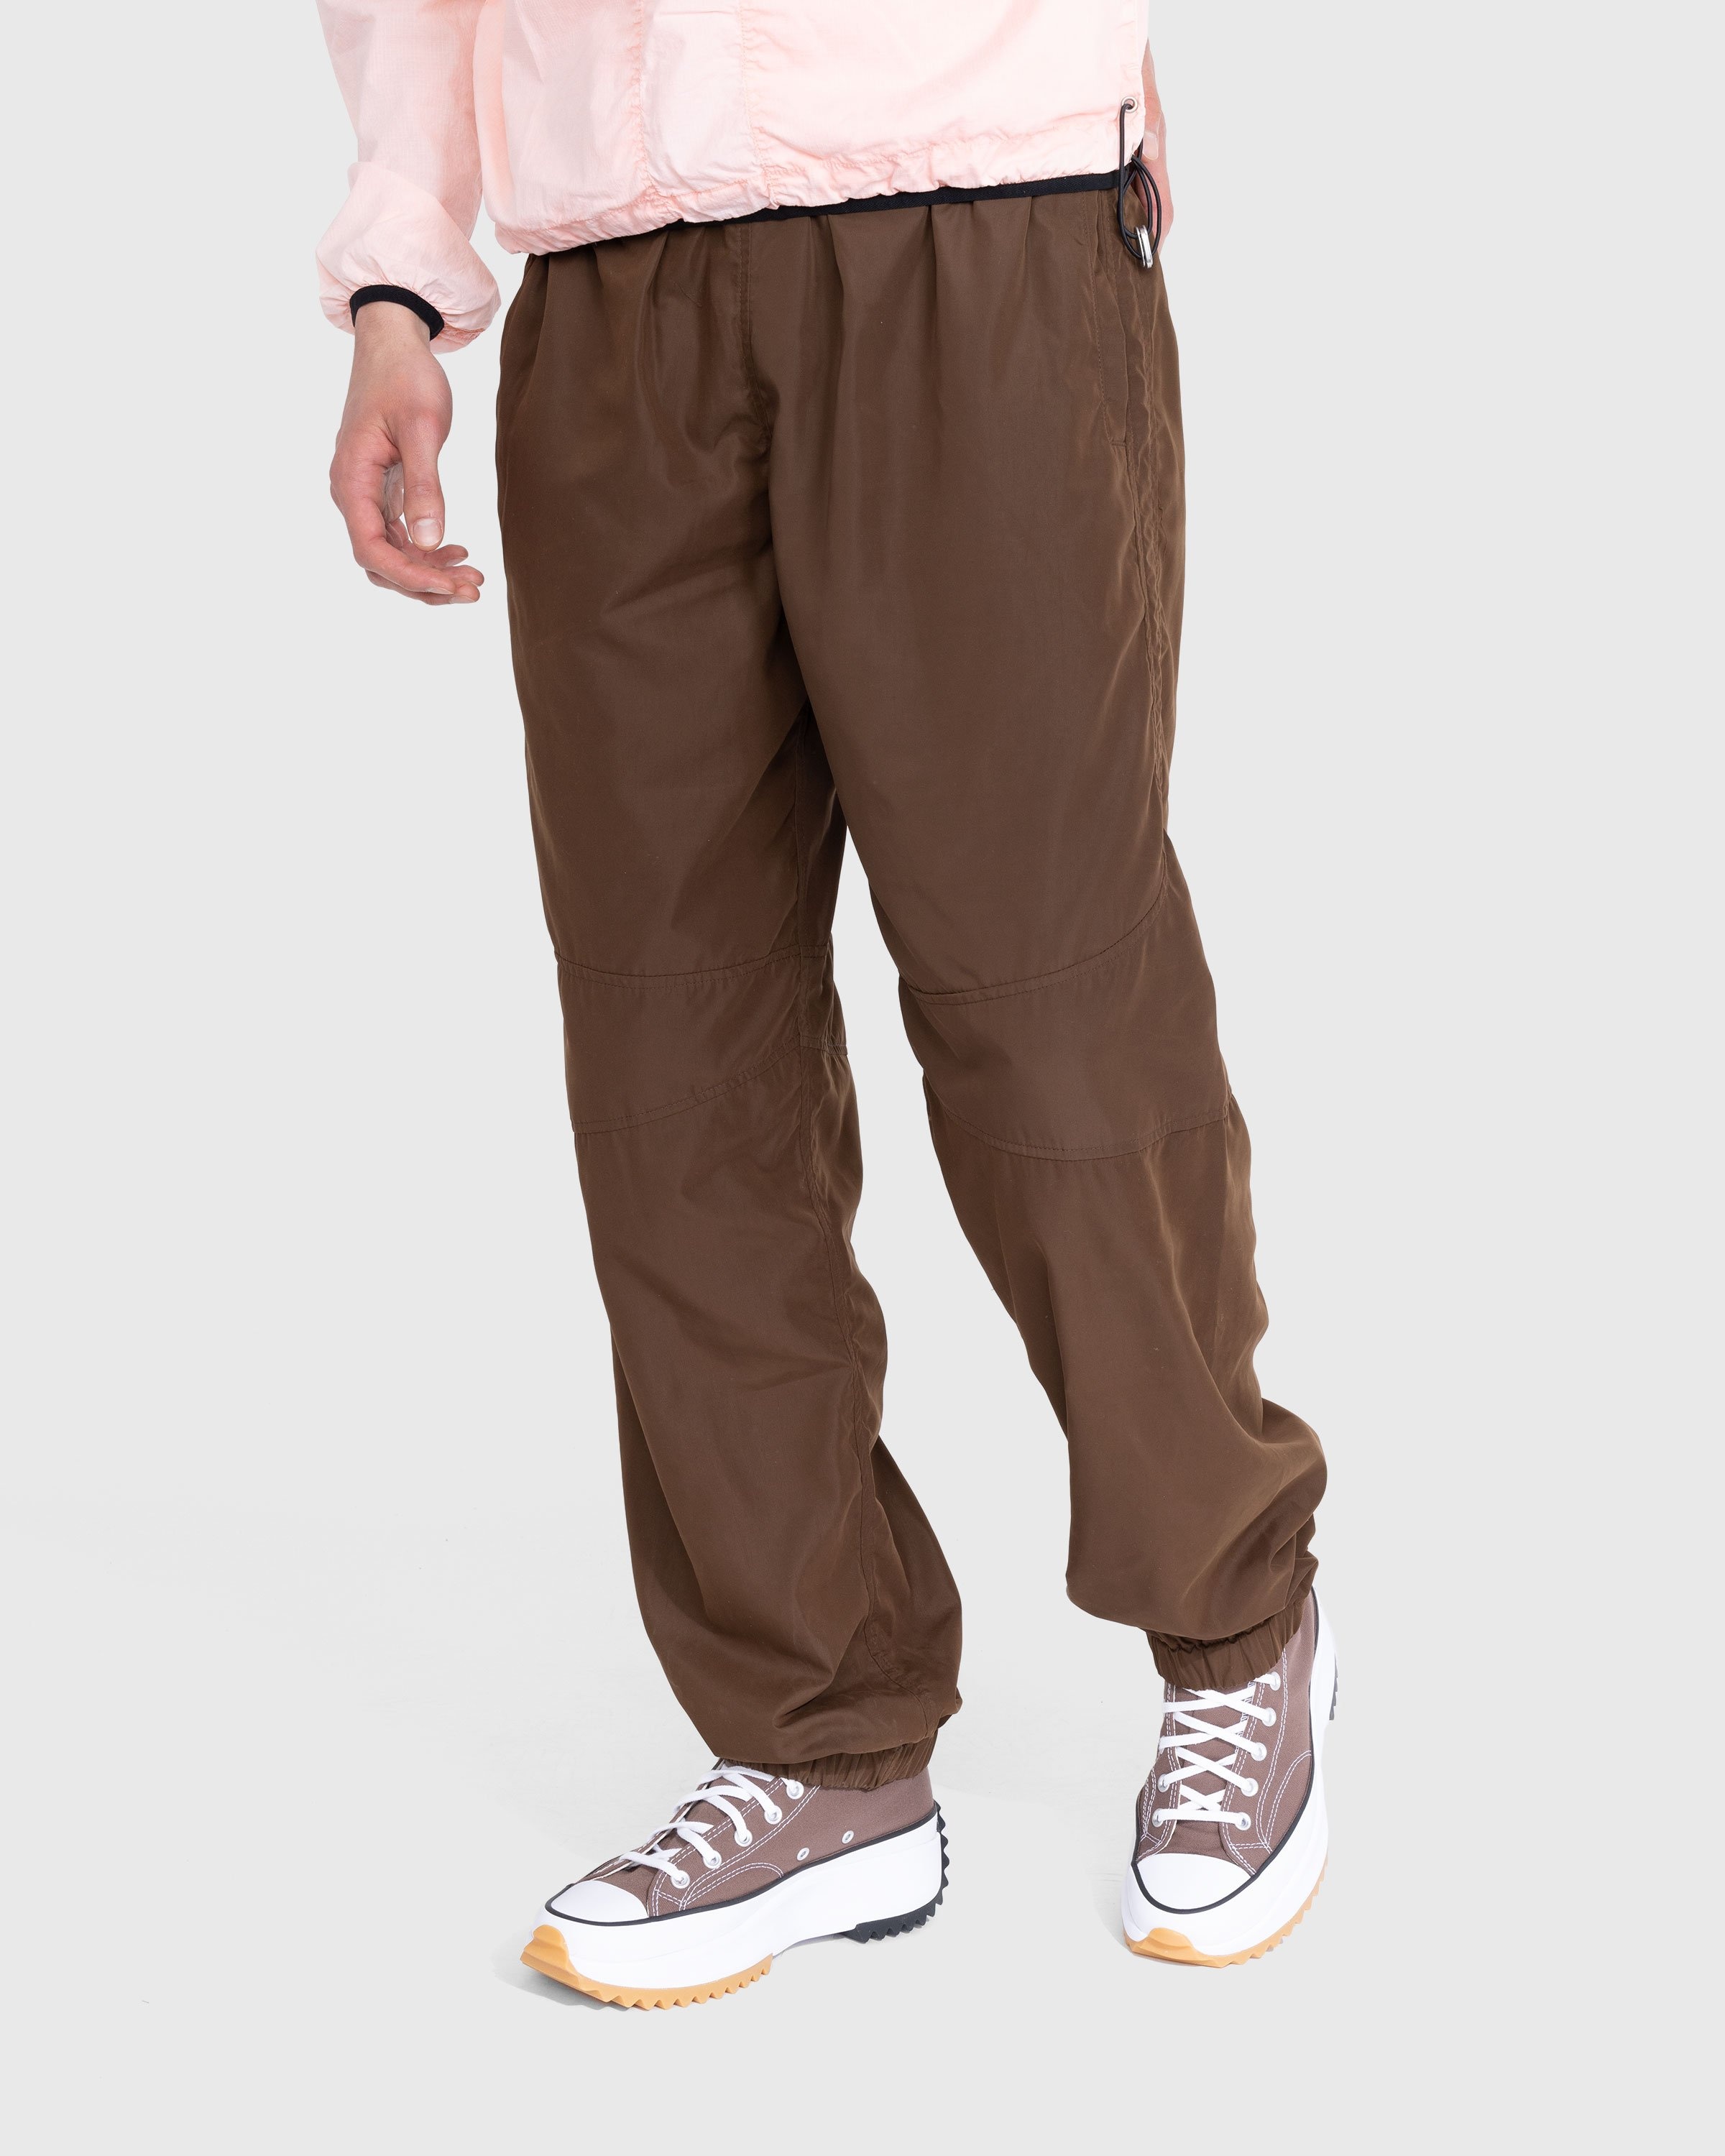 RANRA – Is Pants Brown - Pants - Brown - Image 2